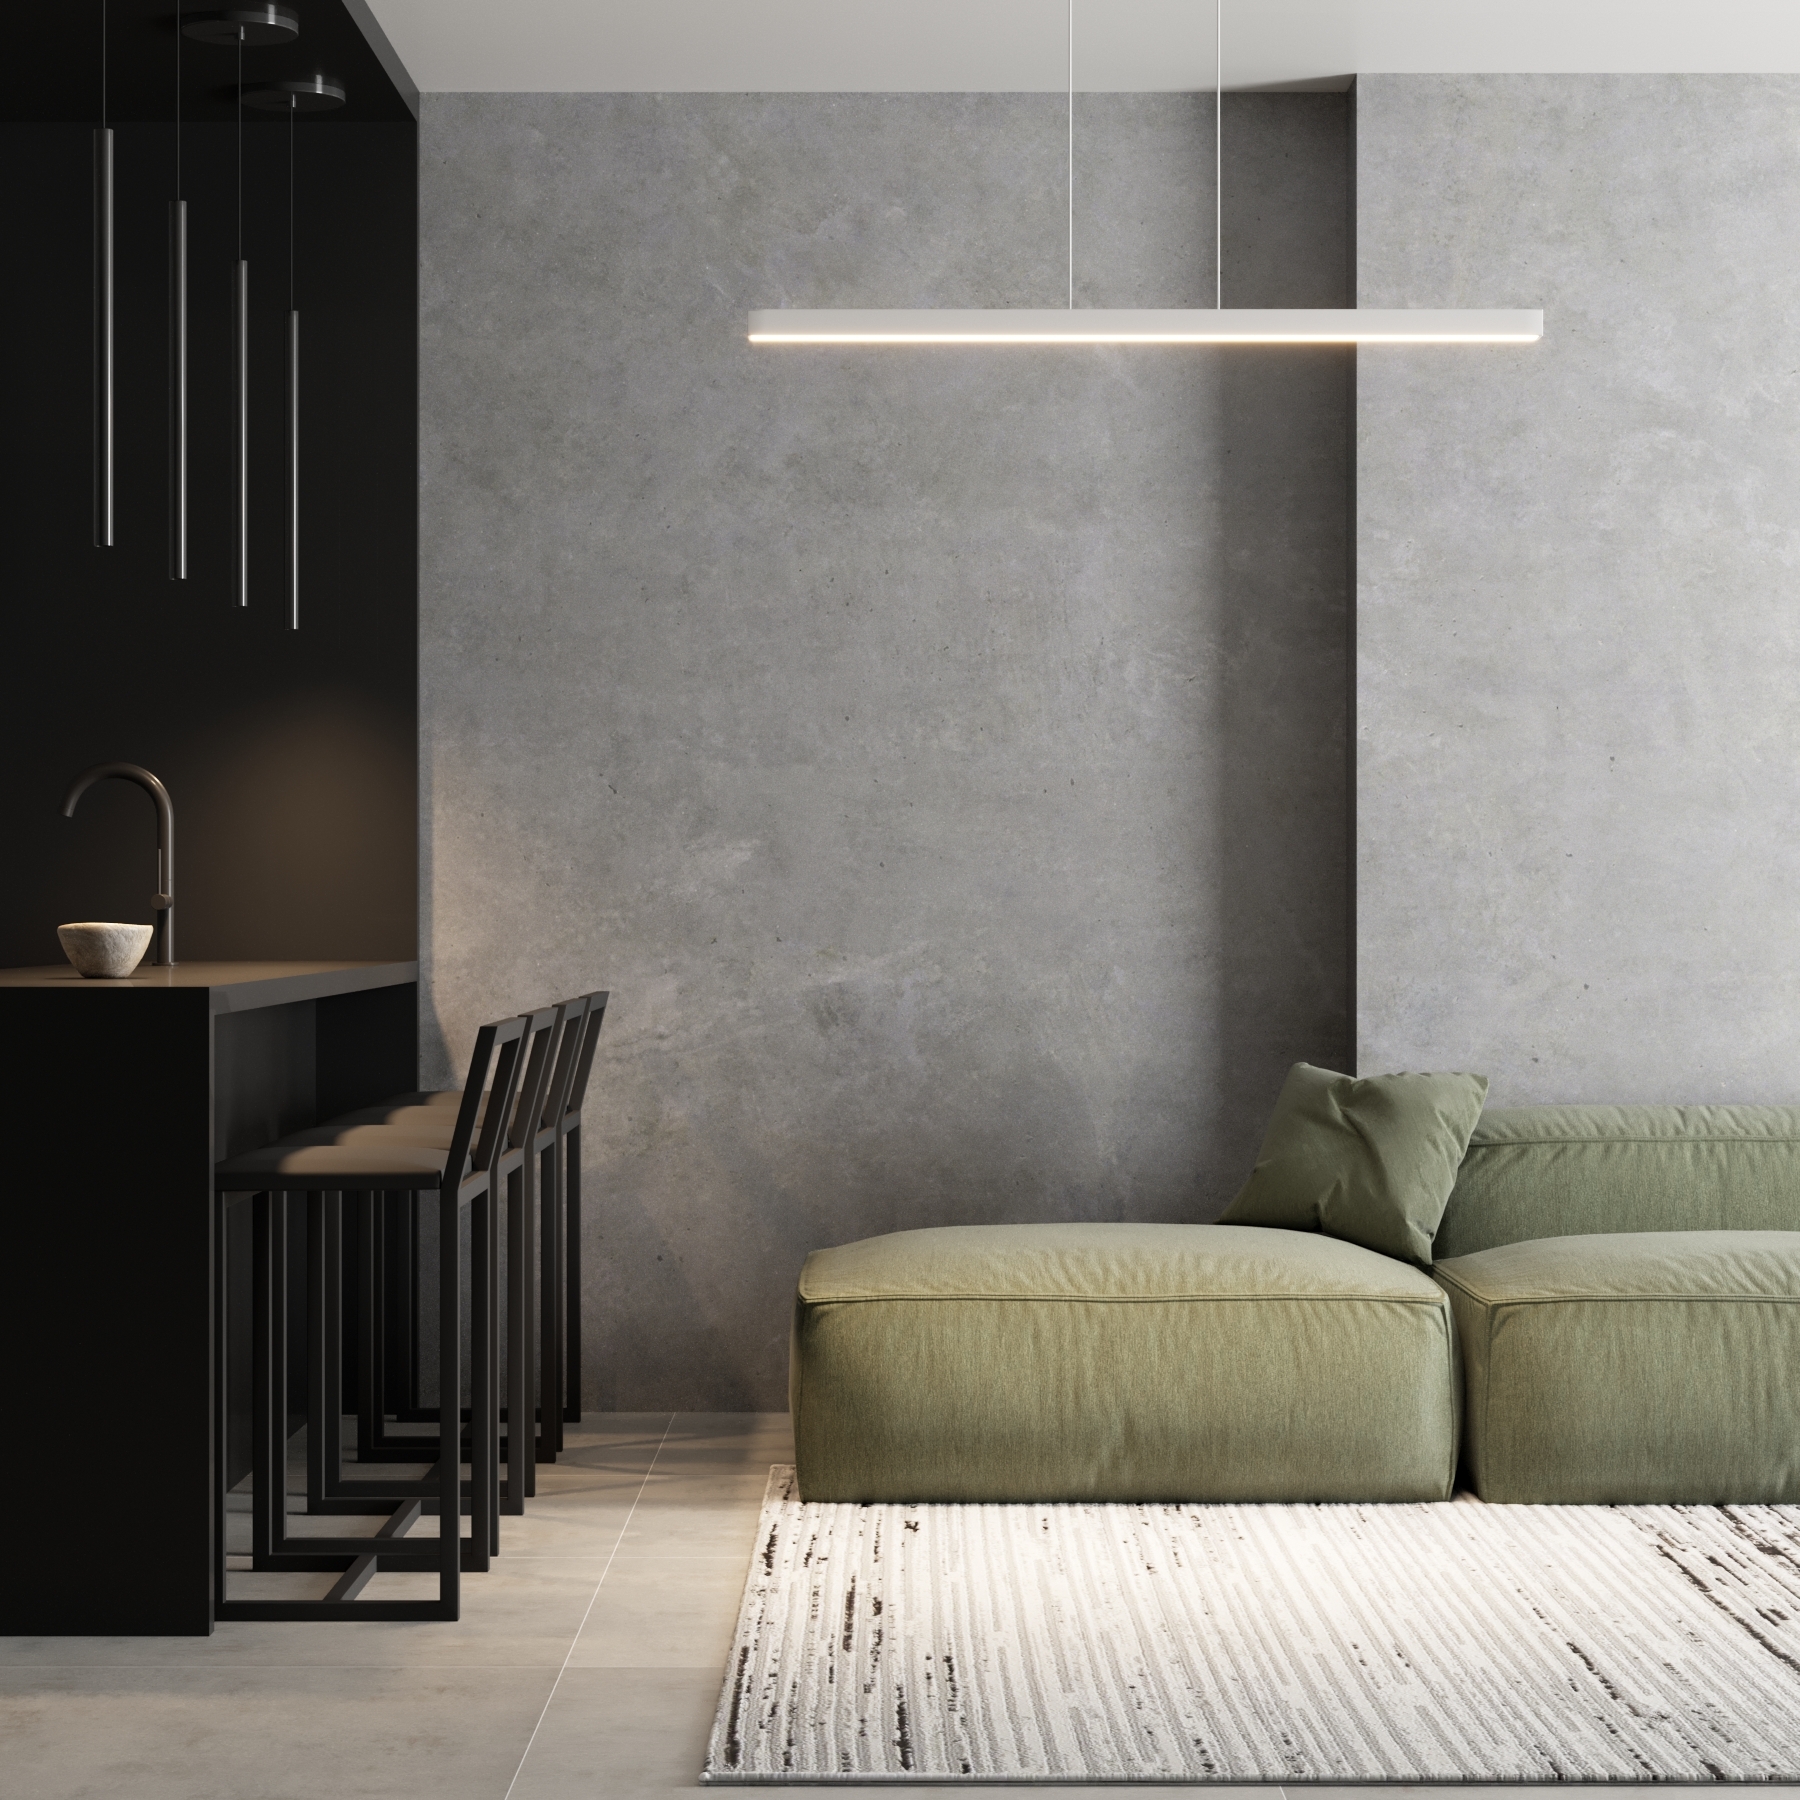 iluminação linear: Pendente Linear com LED Metal Branco em sala